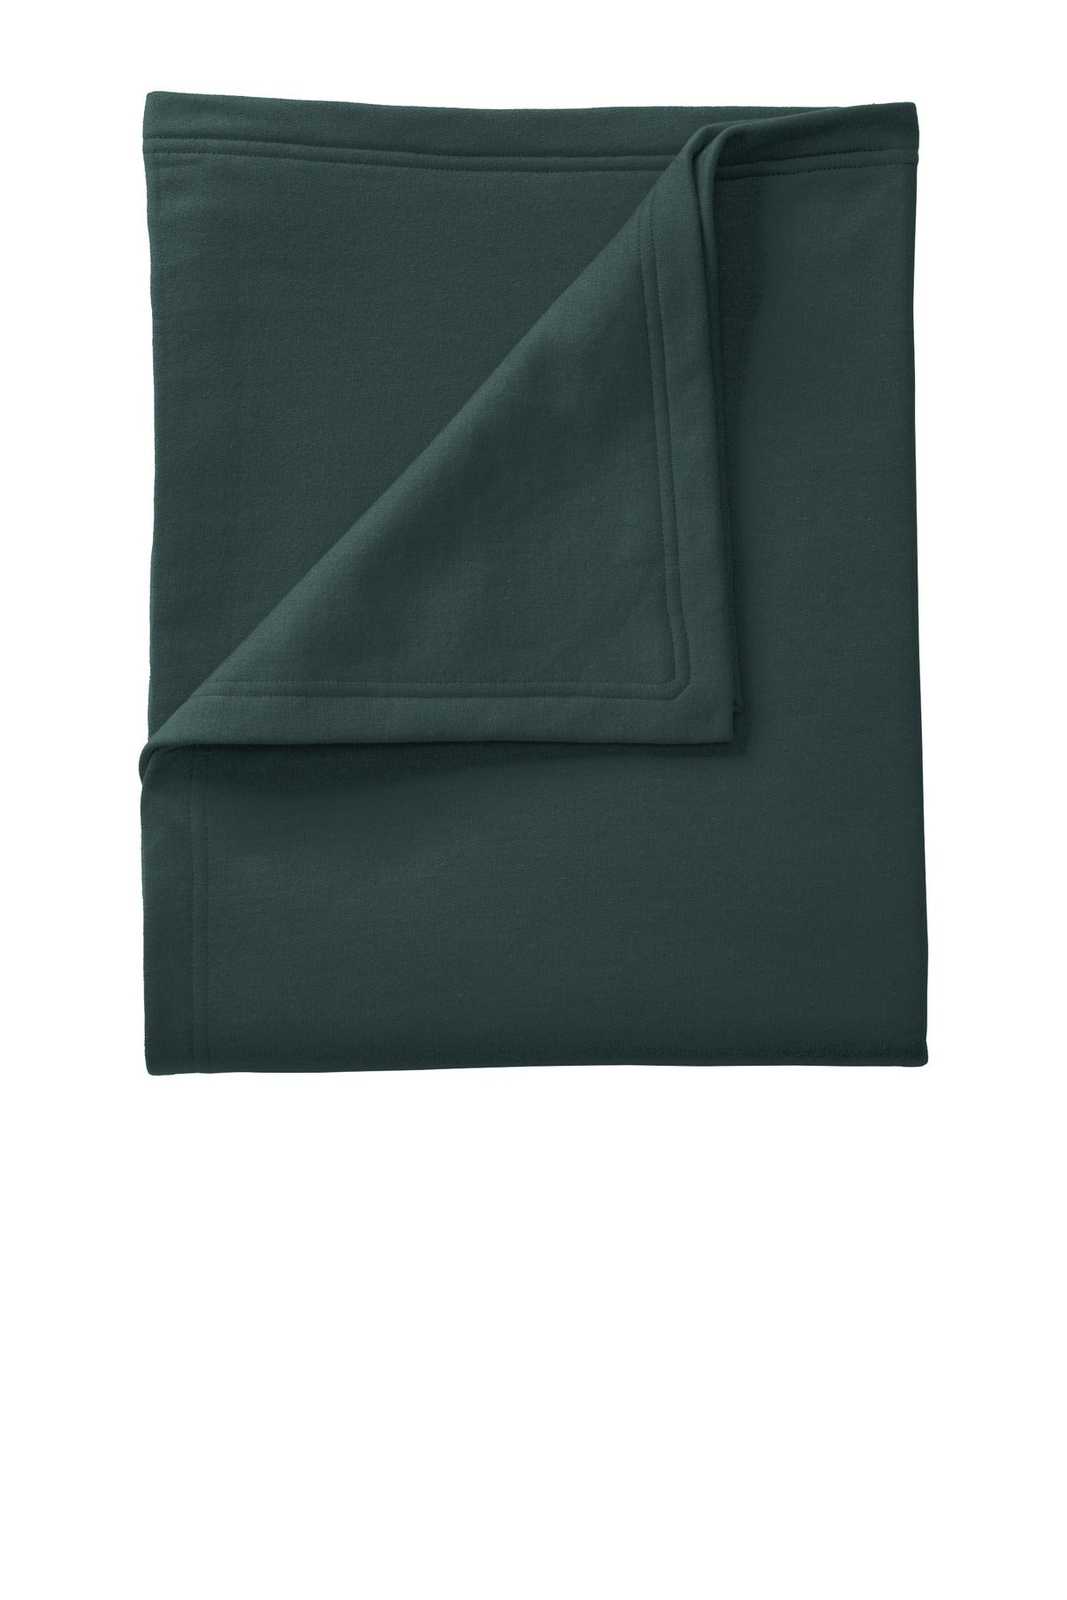 Port &amp; Company BP78 Core Fleece Sweatshirt Blanket - Dark Green - HIT a Double - 1